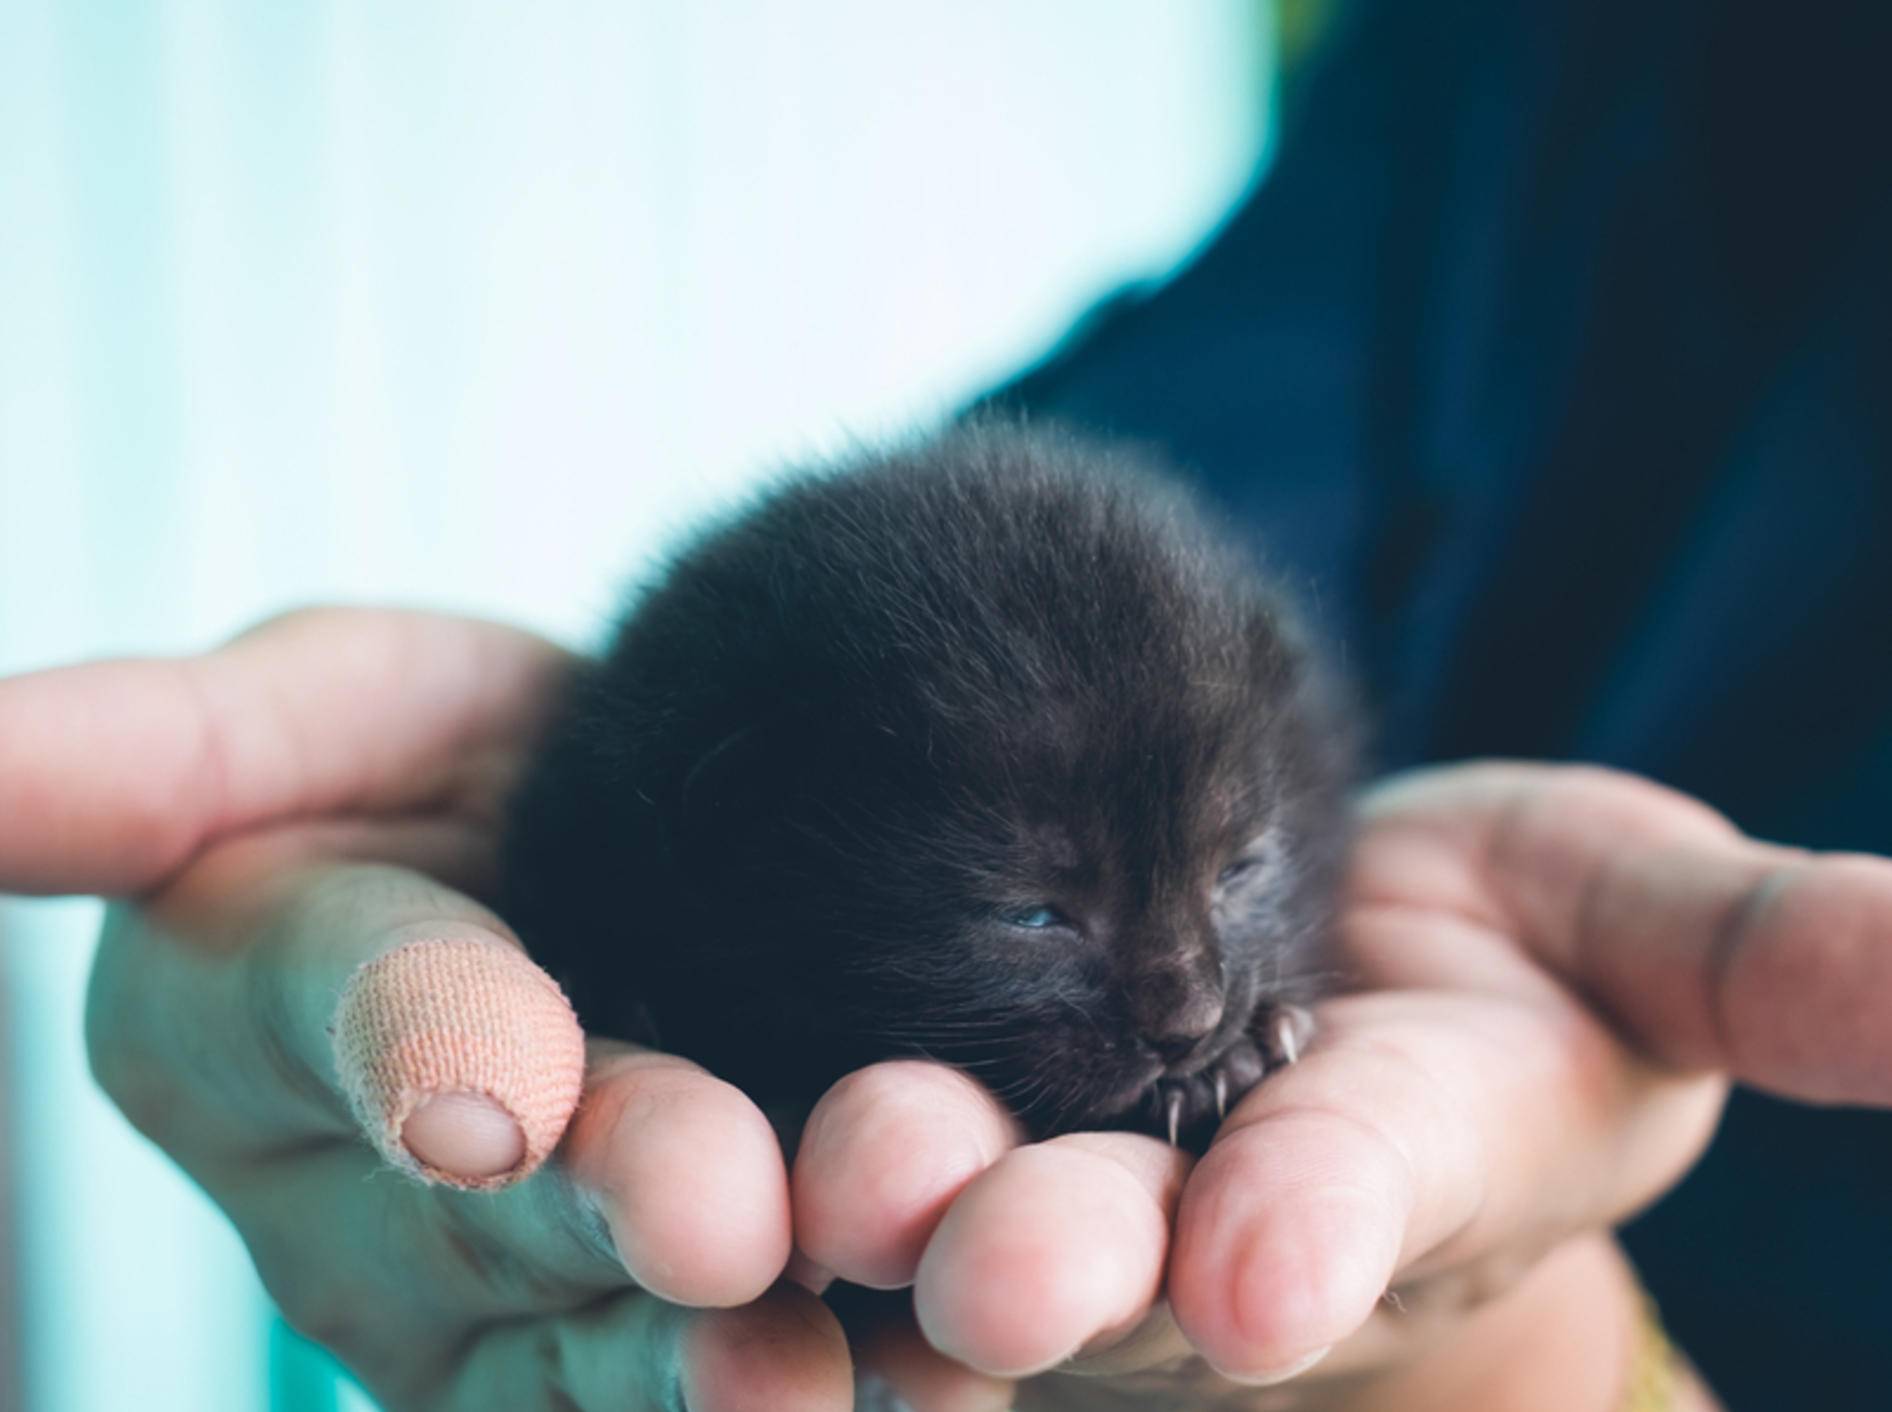 So süß: Ein winziges Katzenbaby schlummert in der Hand - Bild: Shutterstock/chanchai plongern